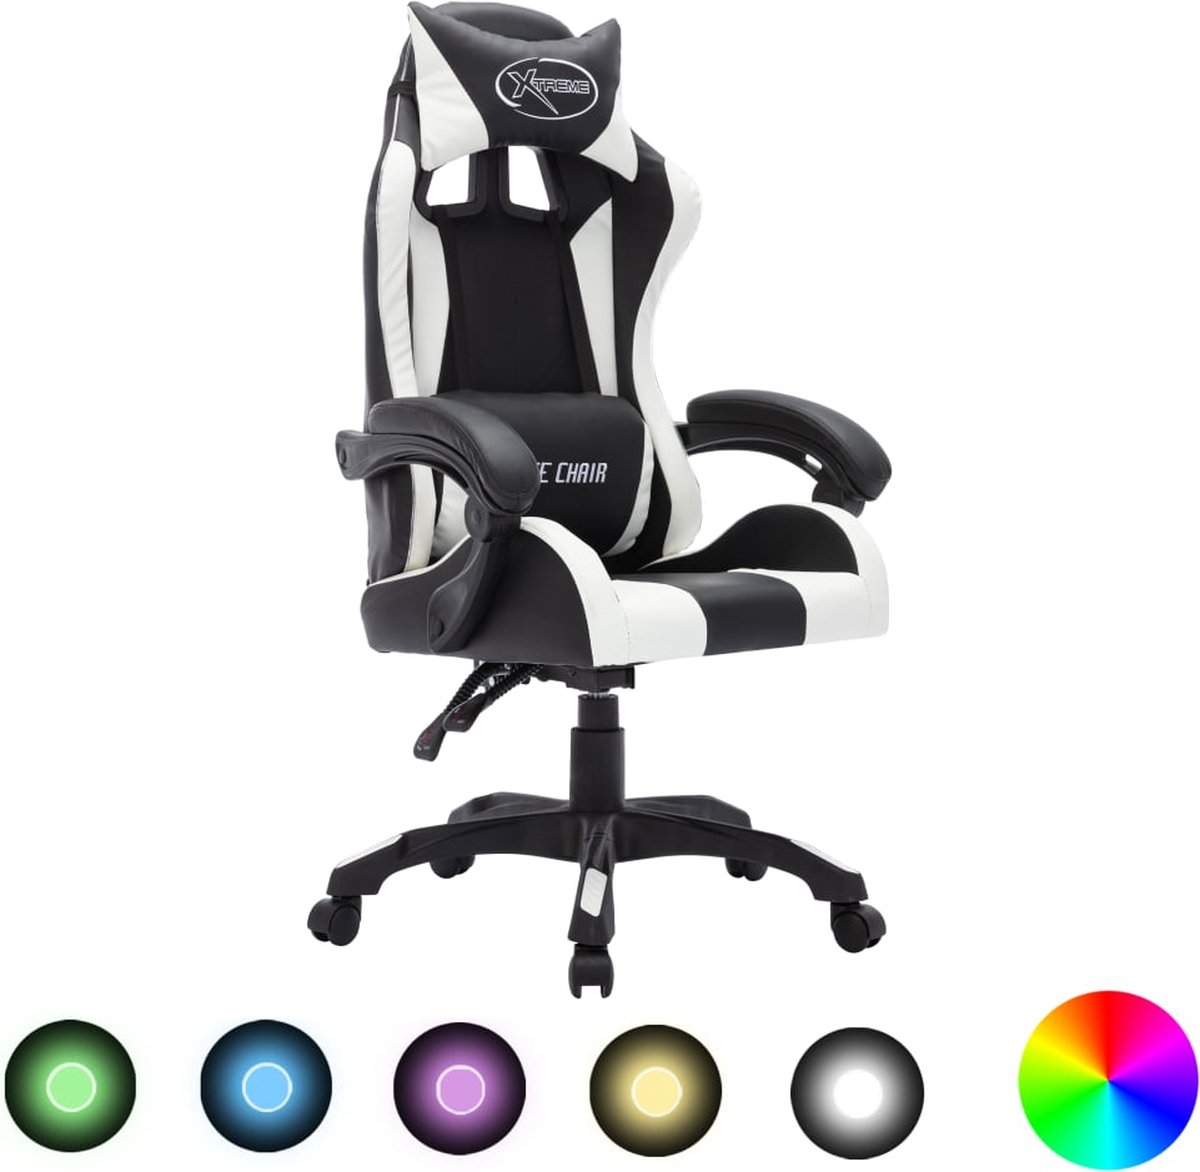 Prolenta Premium - Racestoel met RGB LED-verlichting kunstleer wit en zwart